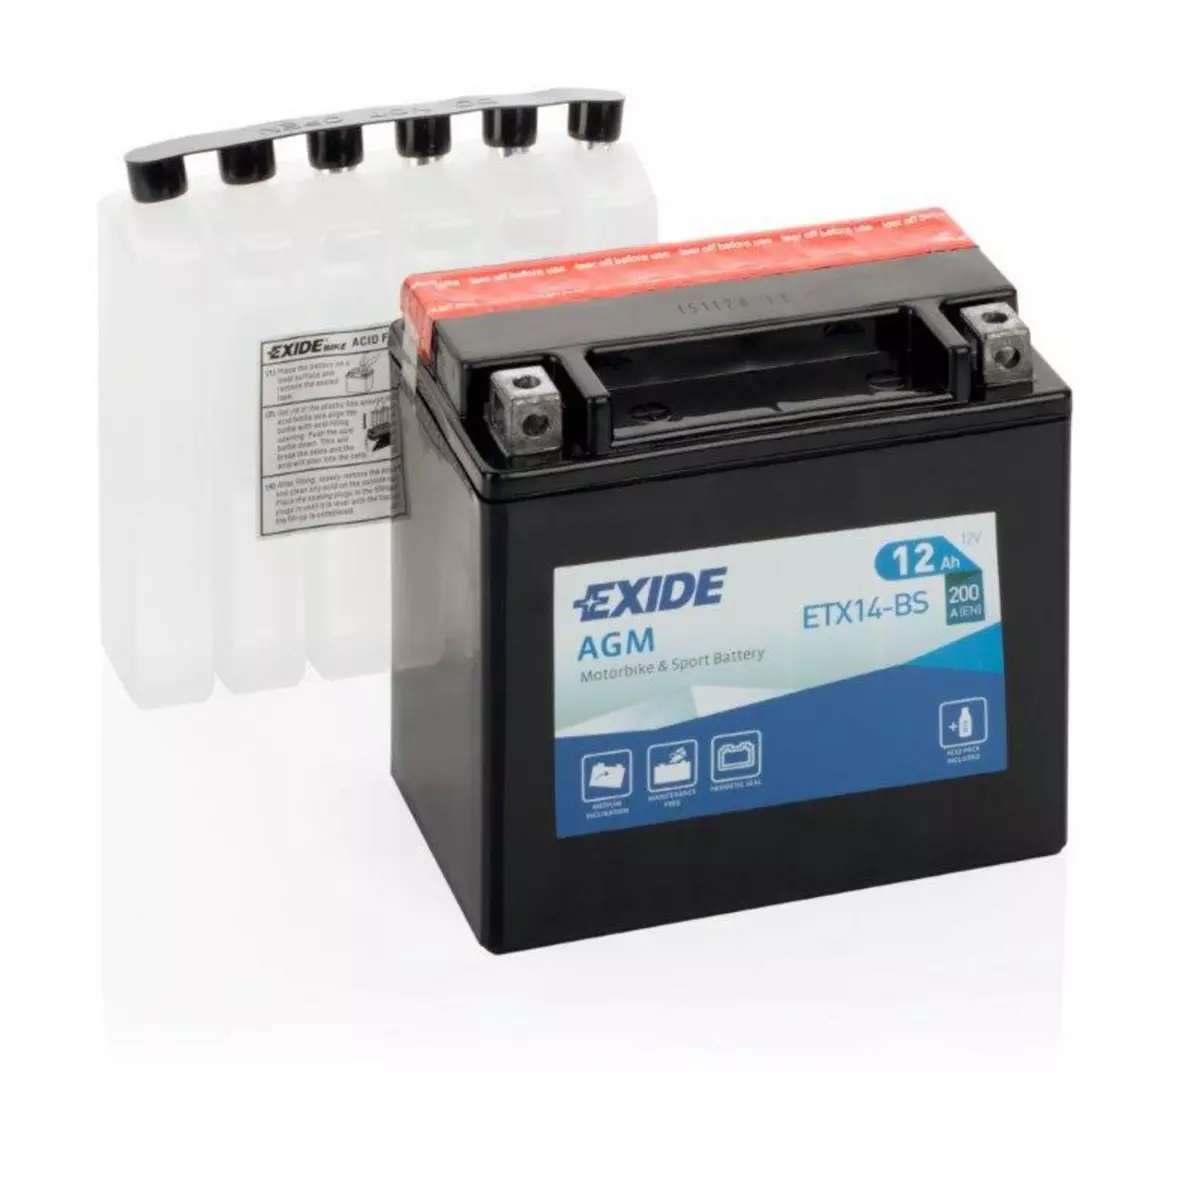 EXIDE Batterie moto Exide ETX14-BS YTX14-BS 12v 12ah 200A